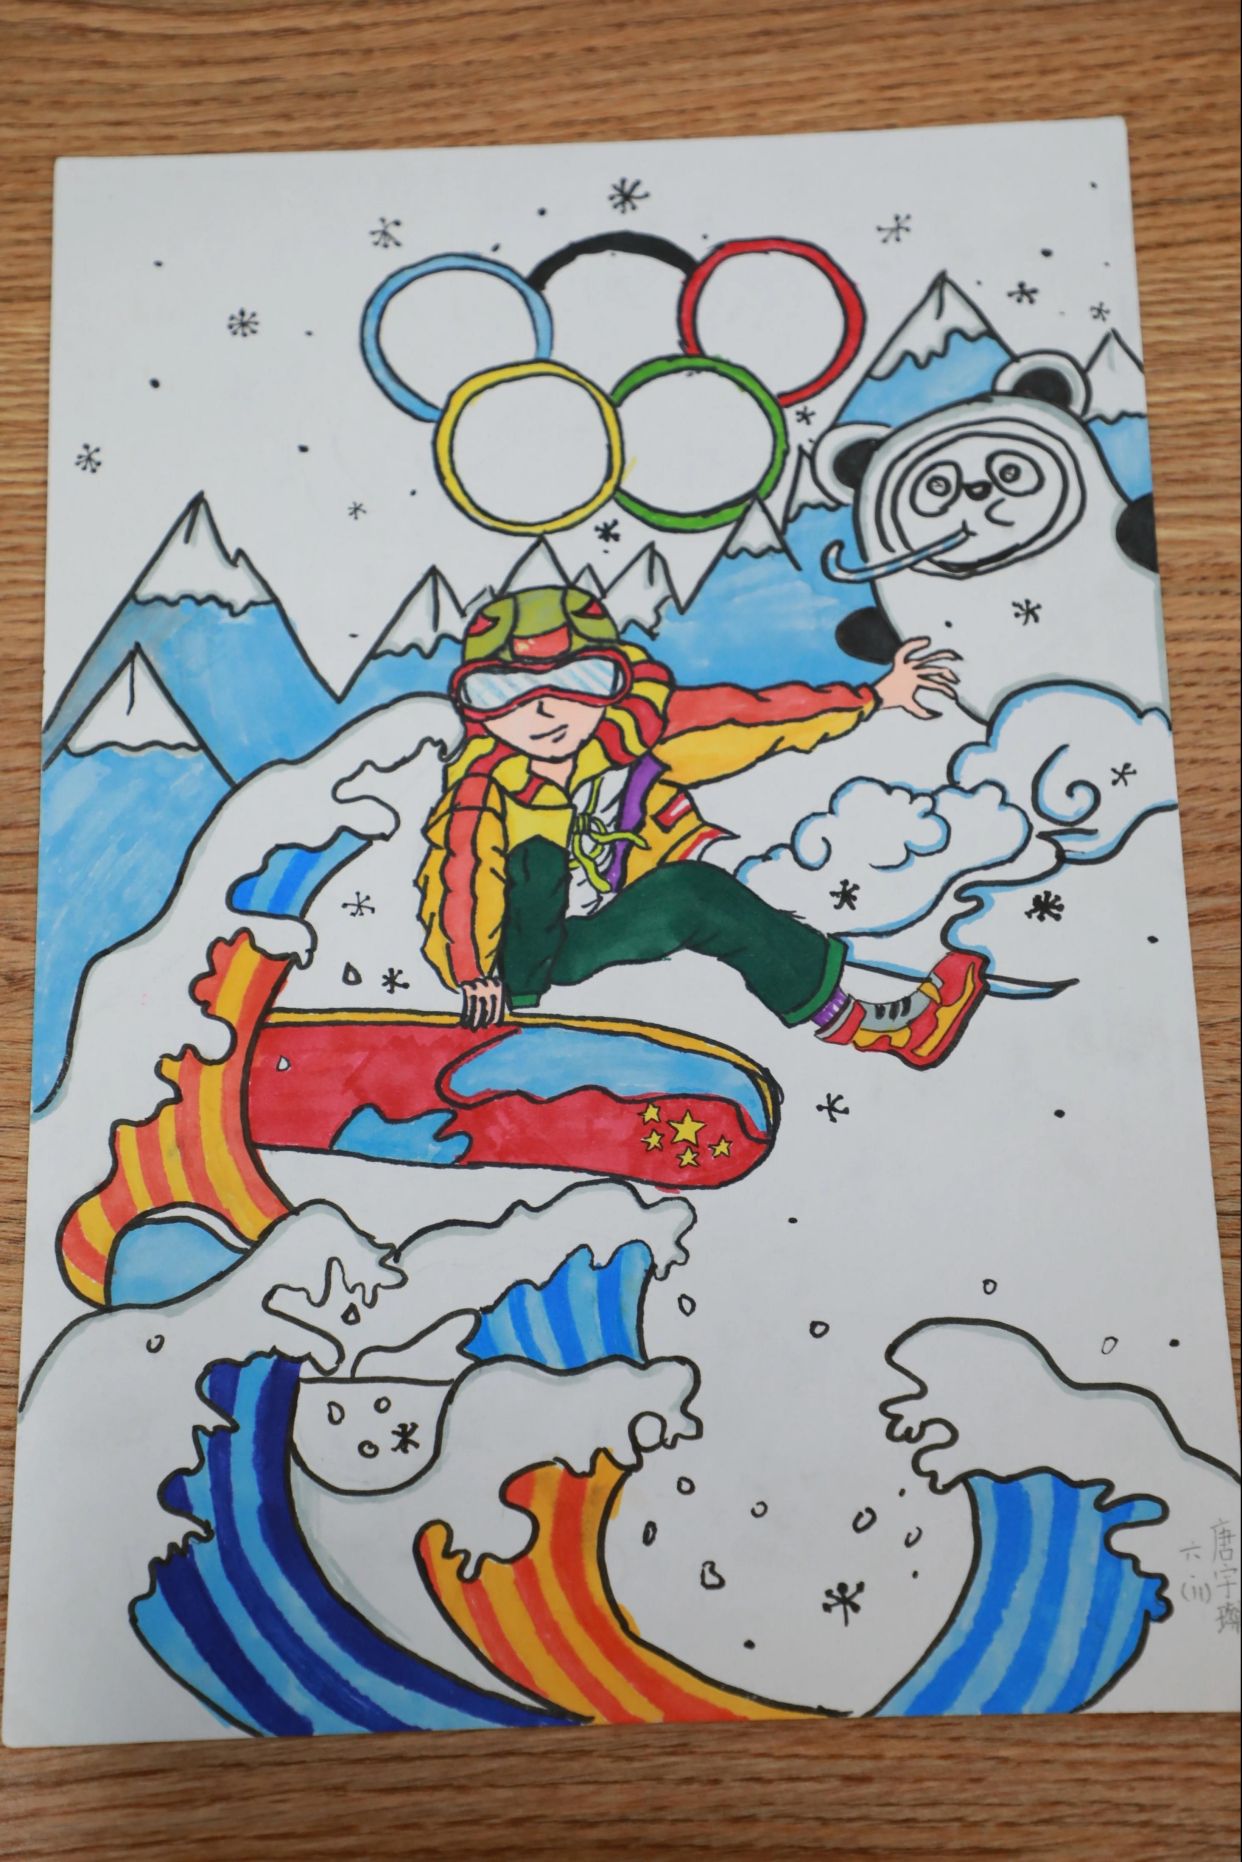 2022冬奥会冰球绘画图片